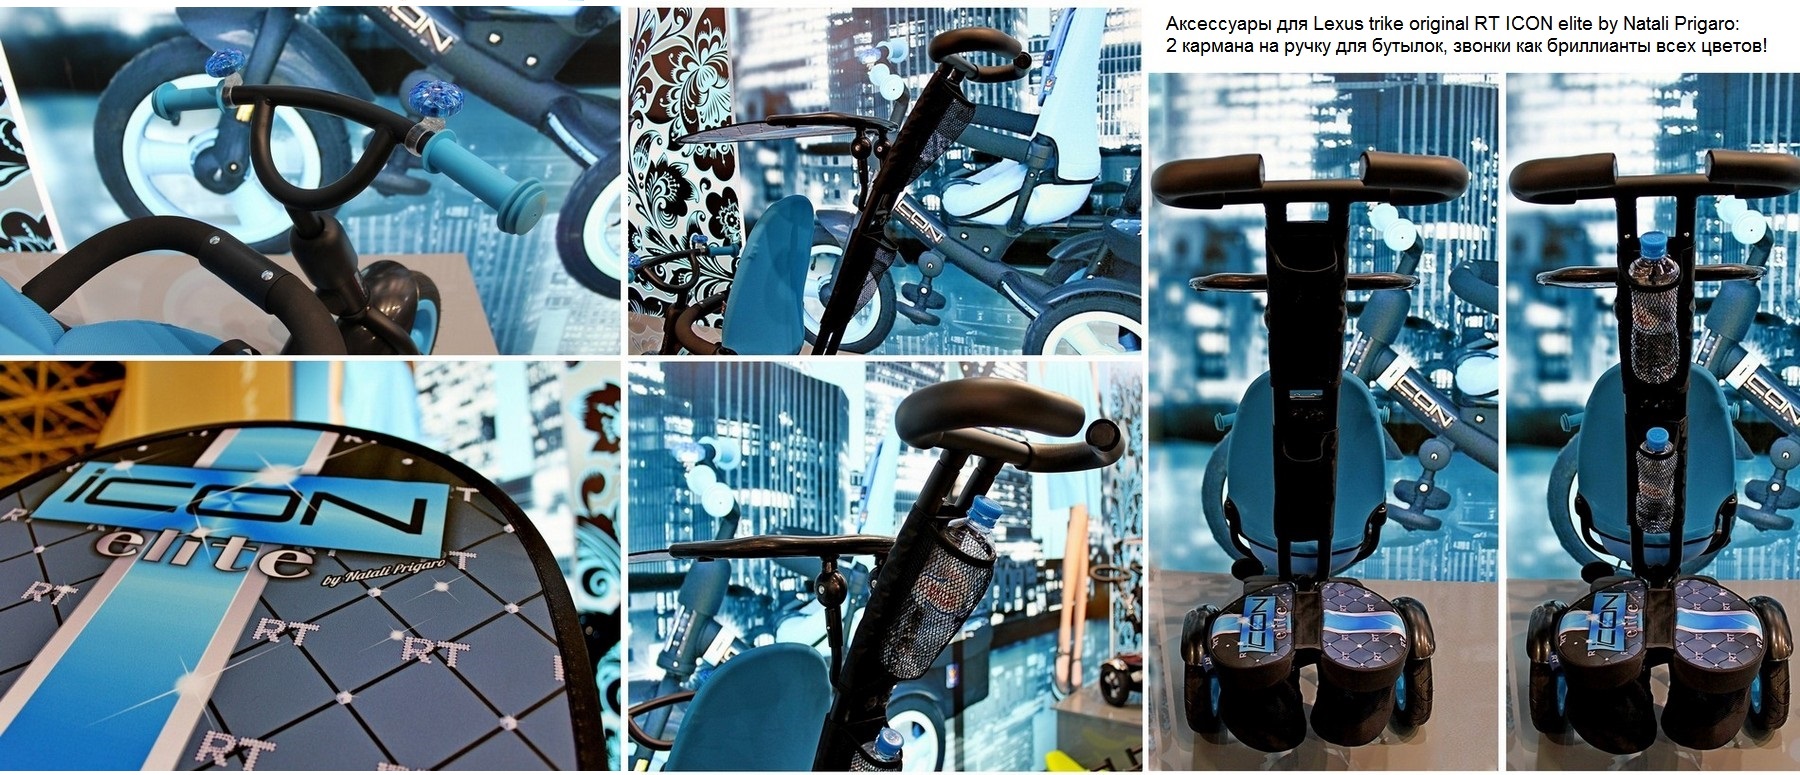 Велосипед Lexus trike original RT ICON elite by Natali Prigaro gold  